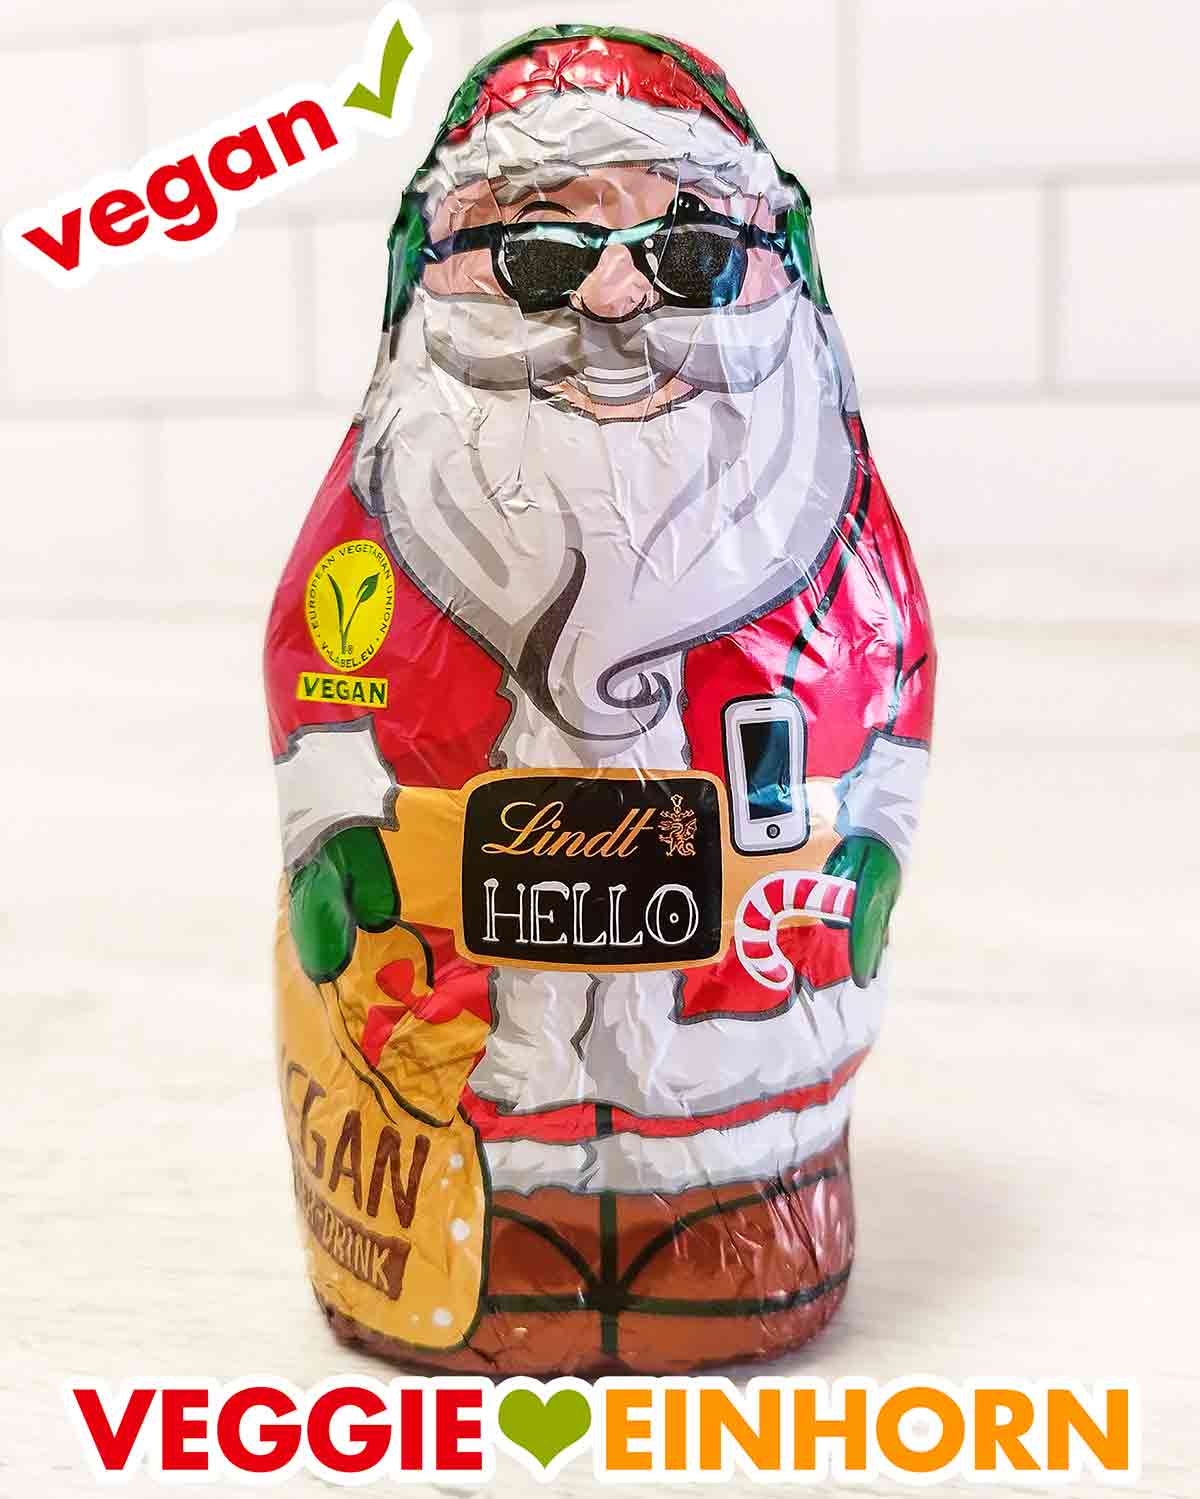 Veganer Weihnachtsmann von Lindt